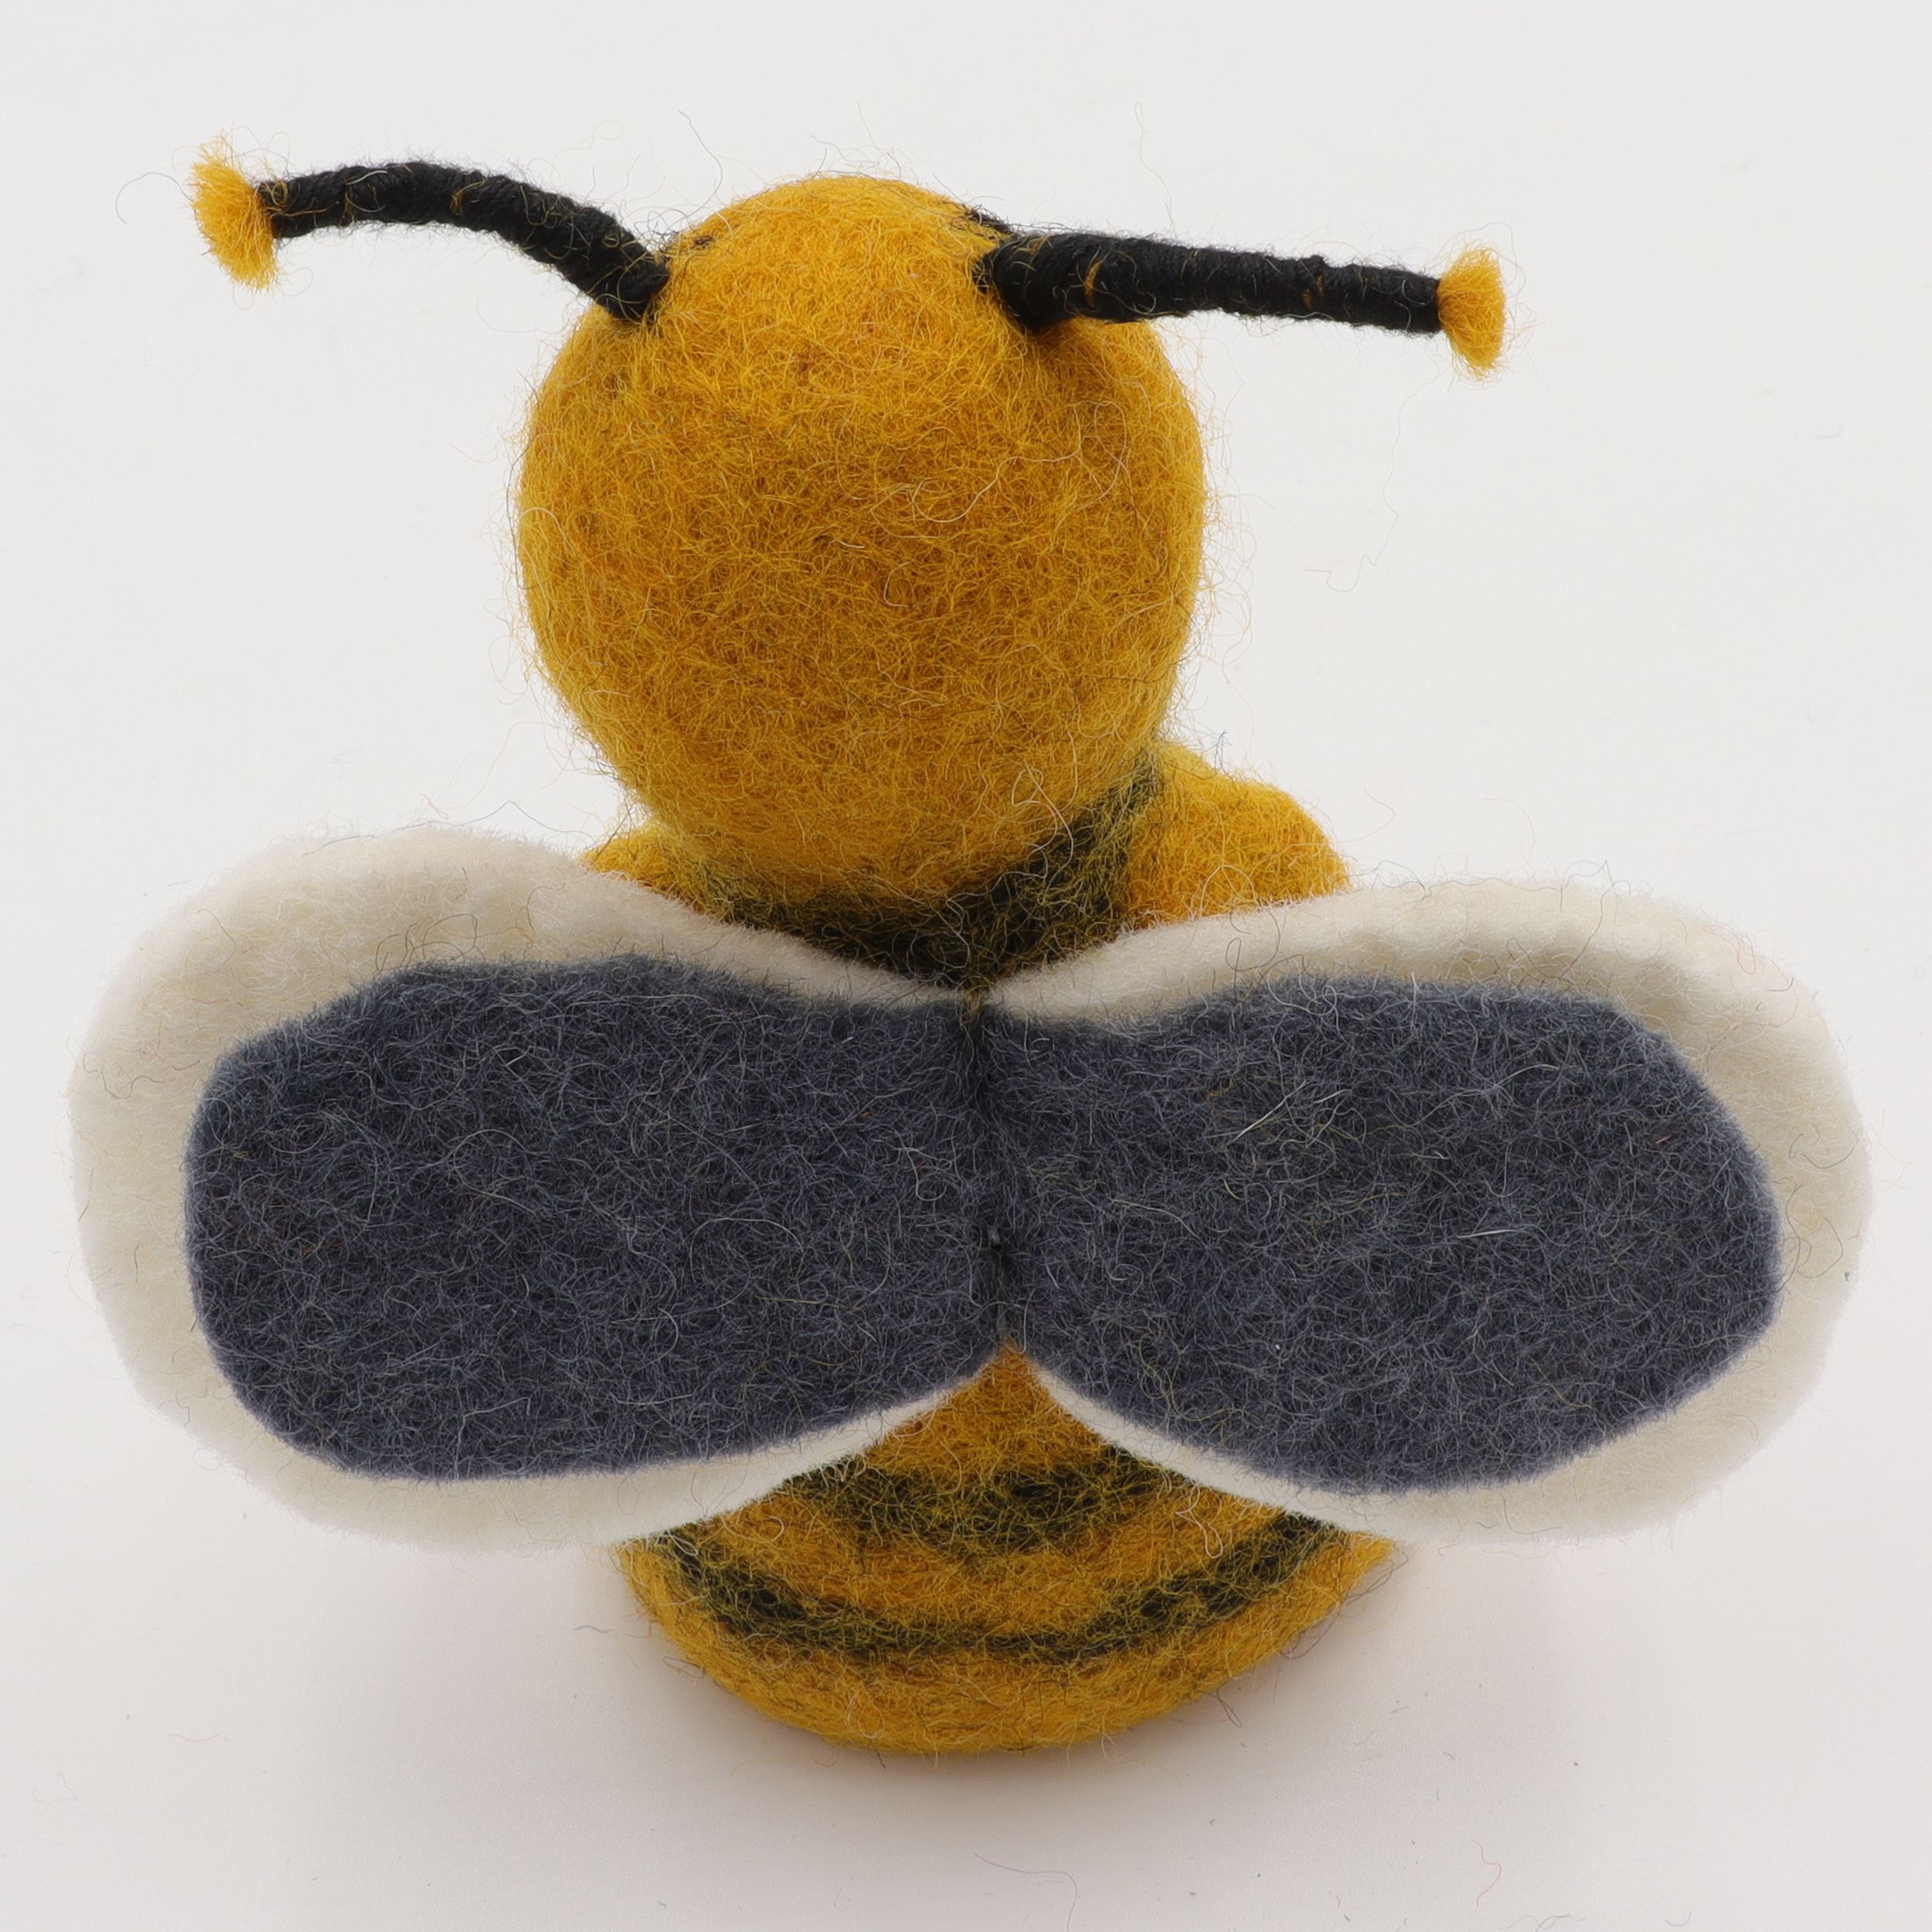 Biene - Eierwärmer aus Filz - Flaschen-Dekoration aus 100% Wolle - Filztier zum Spielen, Lernen, Fördern, Sammeln - tolle Überraschung für Klein und Groß - echte Handarbeit und fair gehandelt